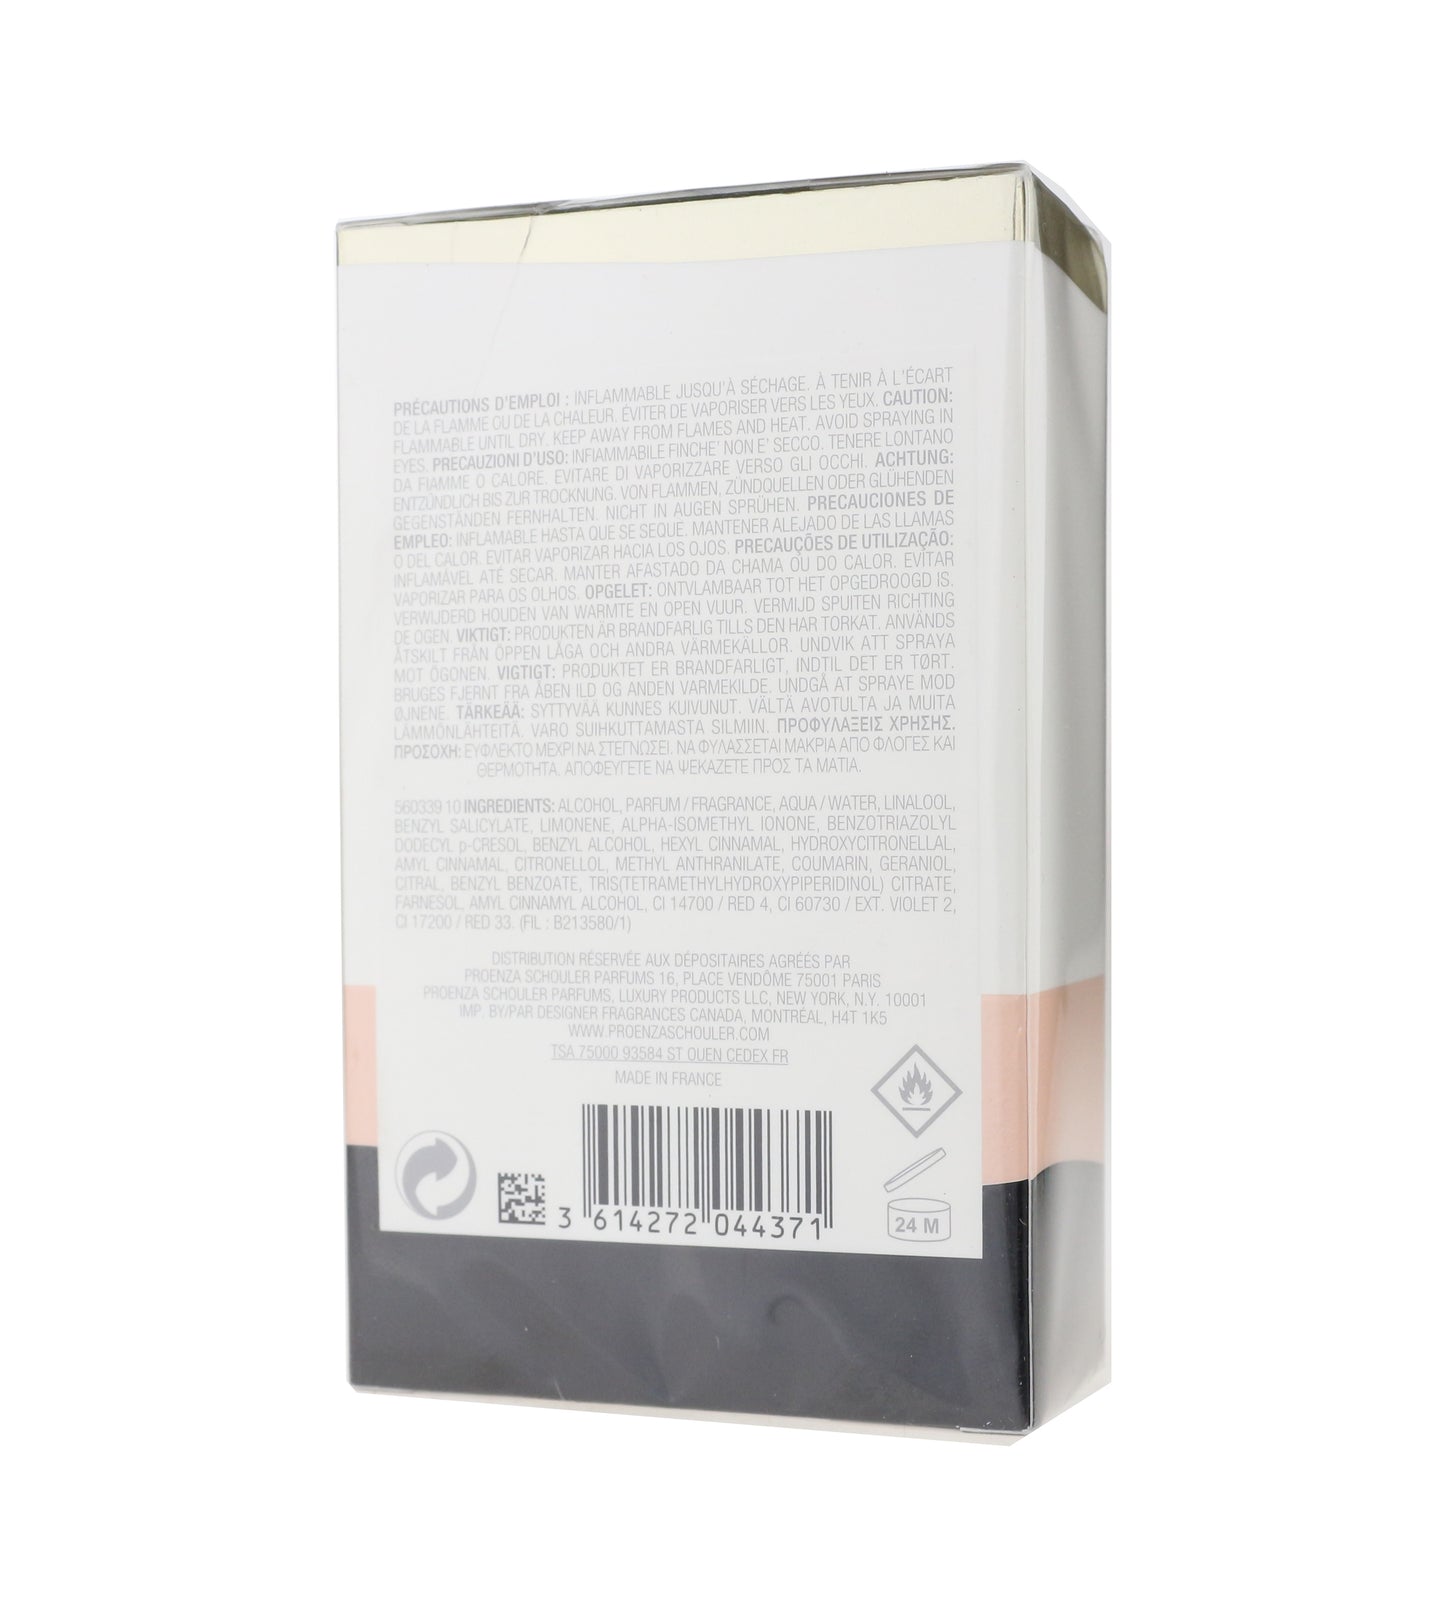 Proenza Schouler Arizona Eau De Parfum Spray 3oz/90ml New In Box